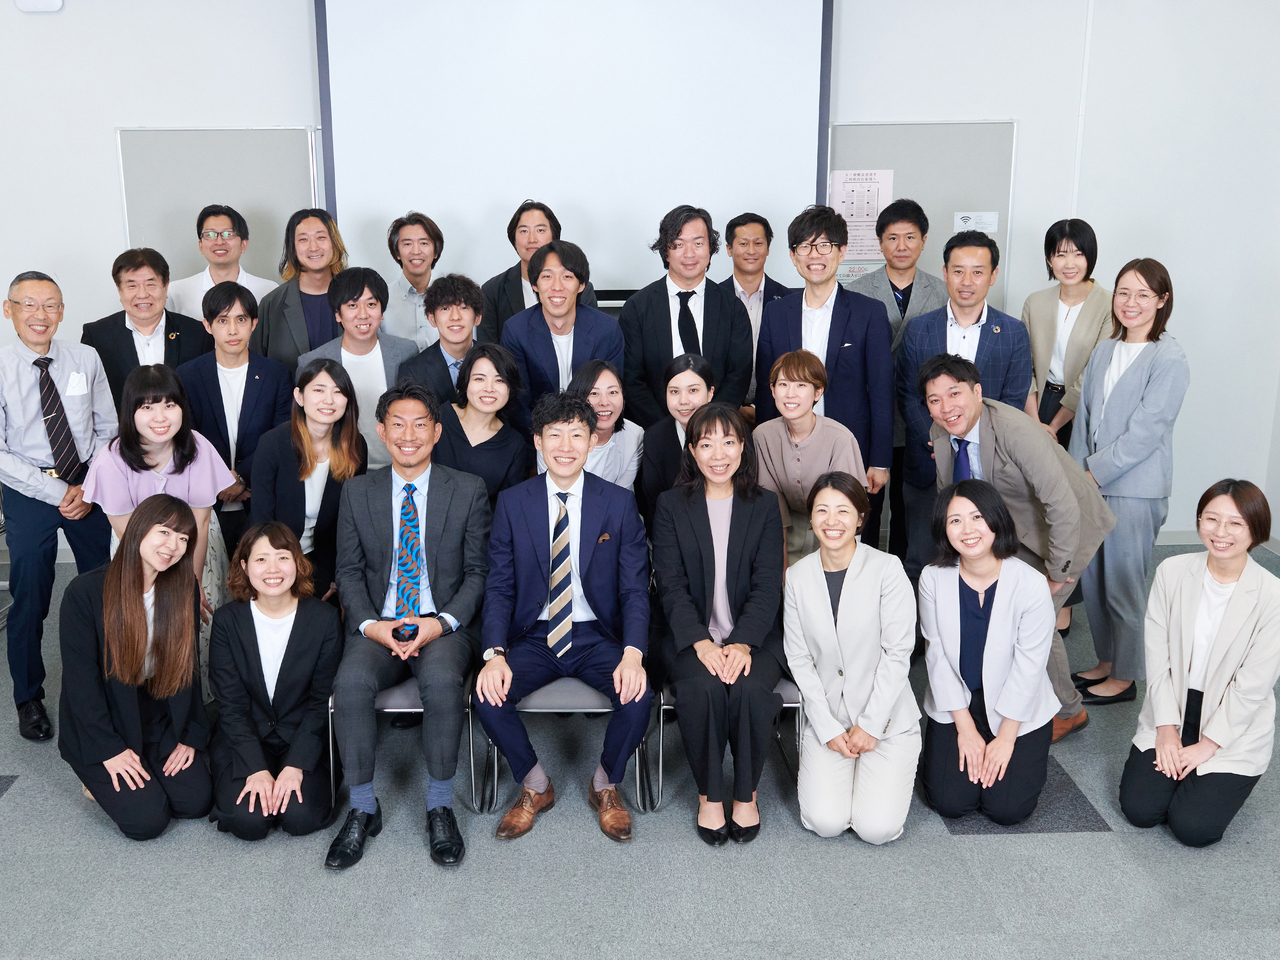 スリーカウント株式会社は、2007年6月設立で、静岡県浜松市中区に本社オフィスを置く。
2019年3月には静岡支店をオープン、より多くのクライアントの問題解決に取り組む。